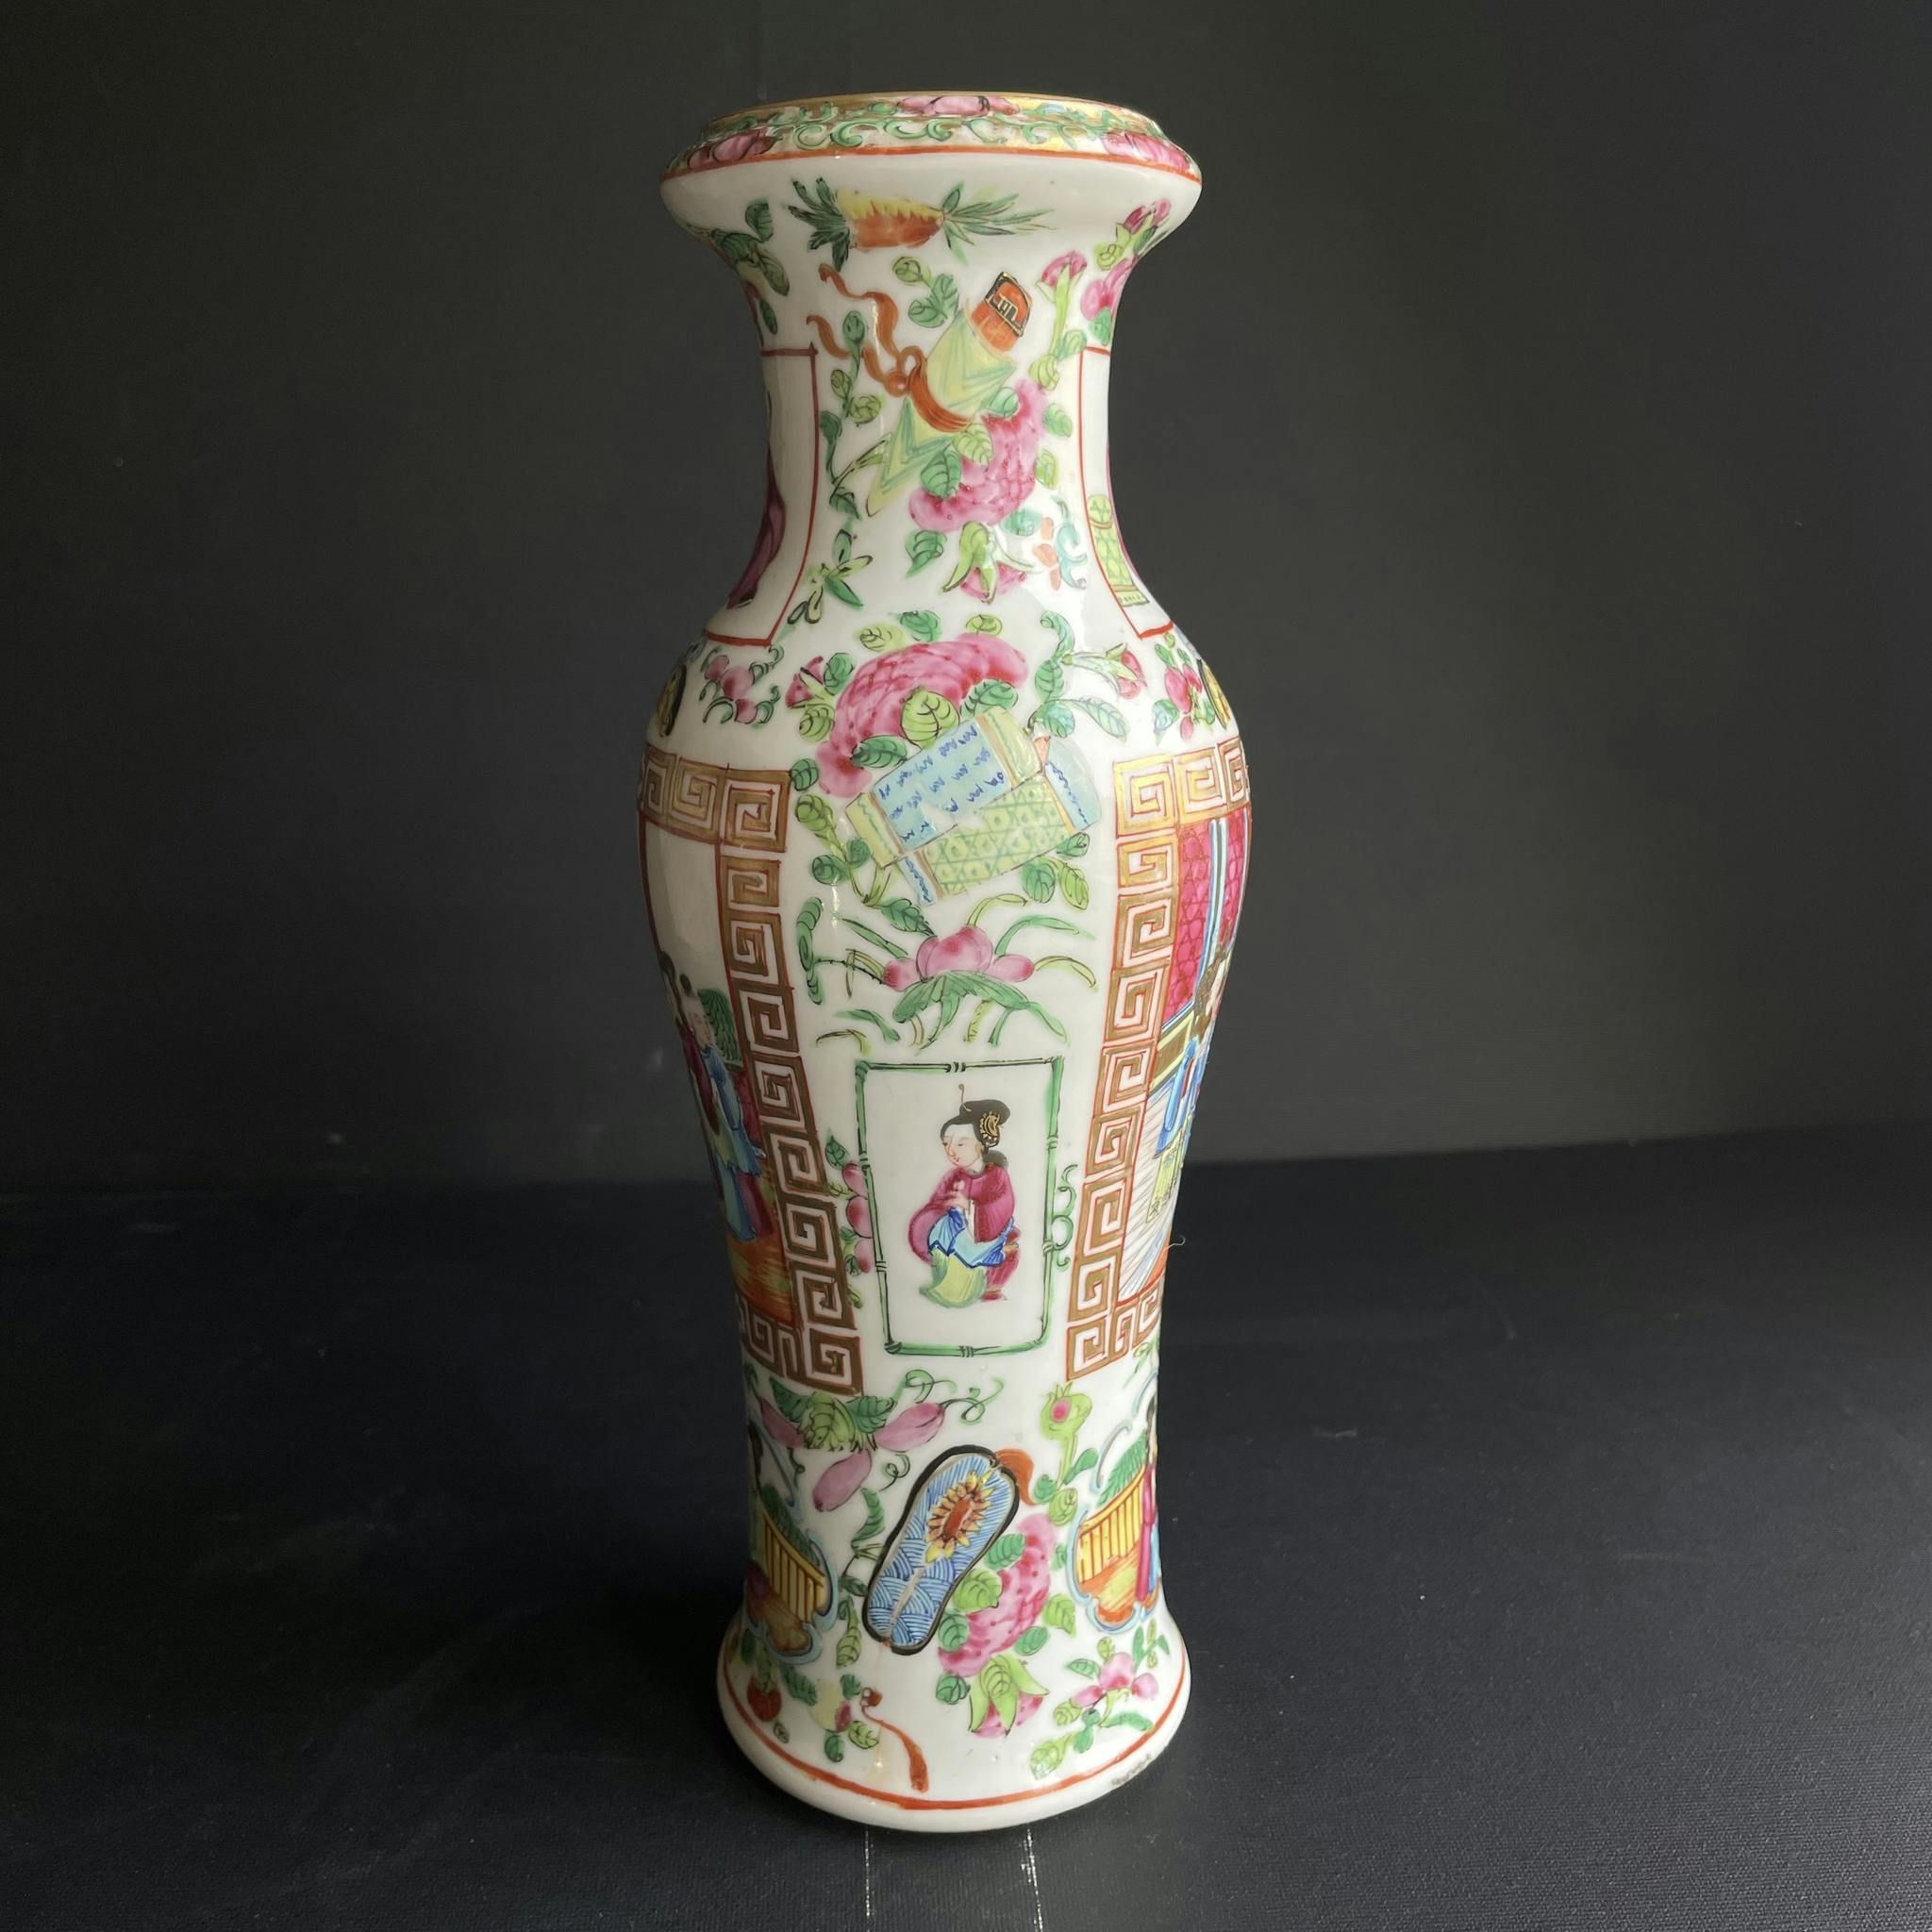 Antique Chinese rose mandarin vase 19th century #1348